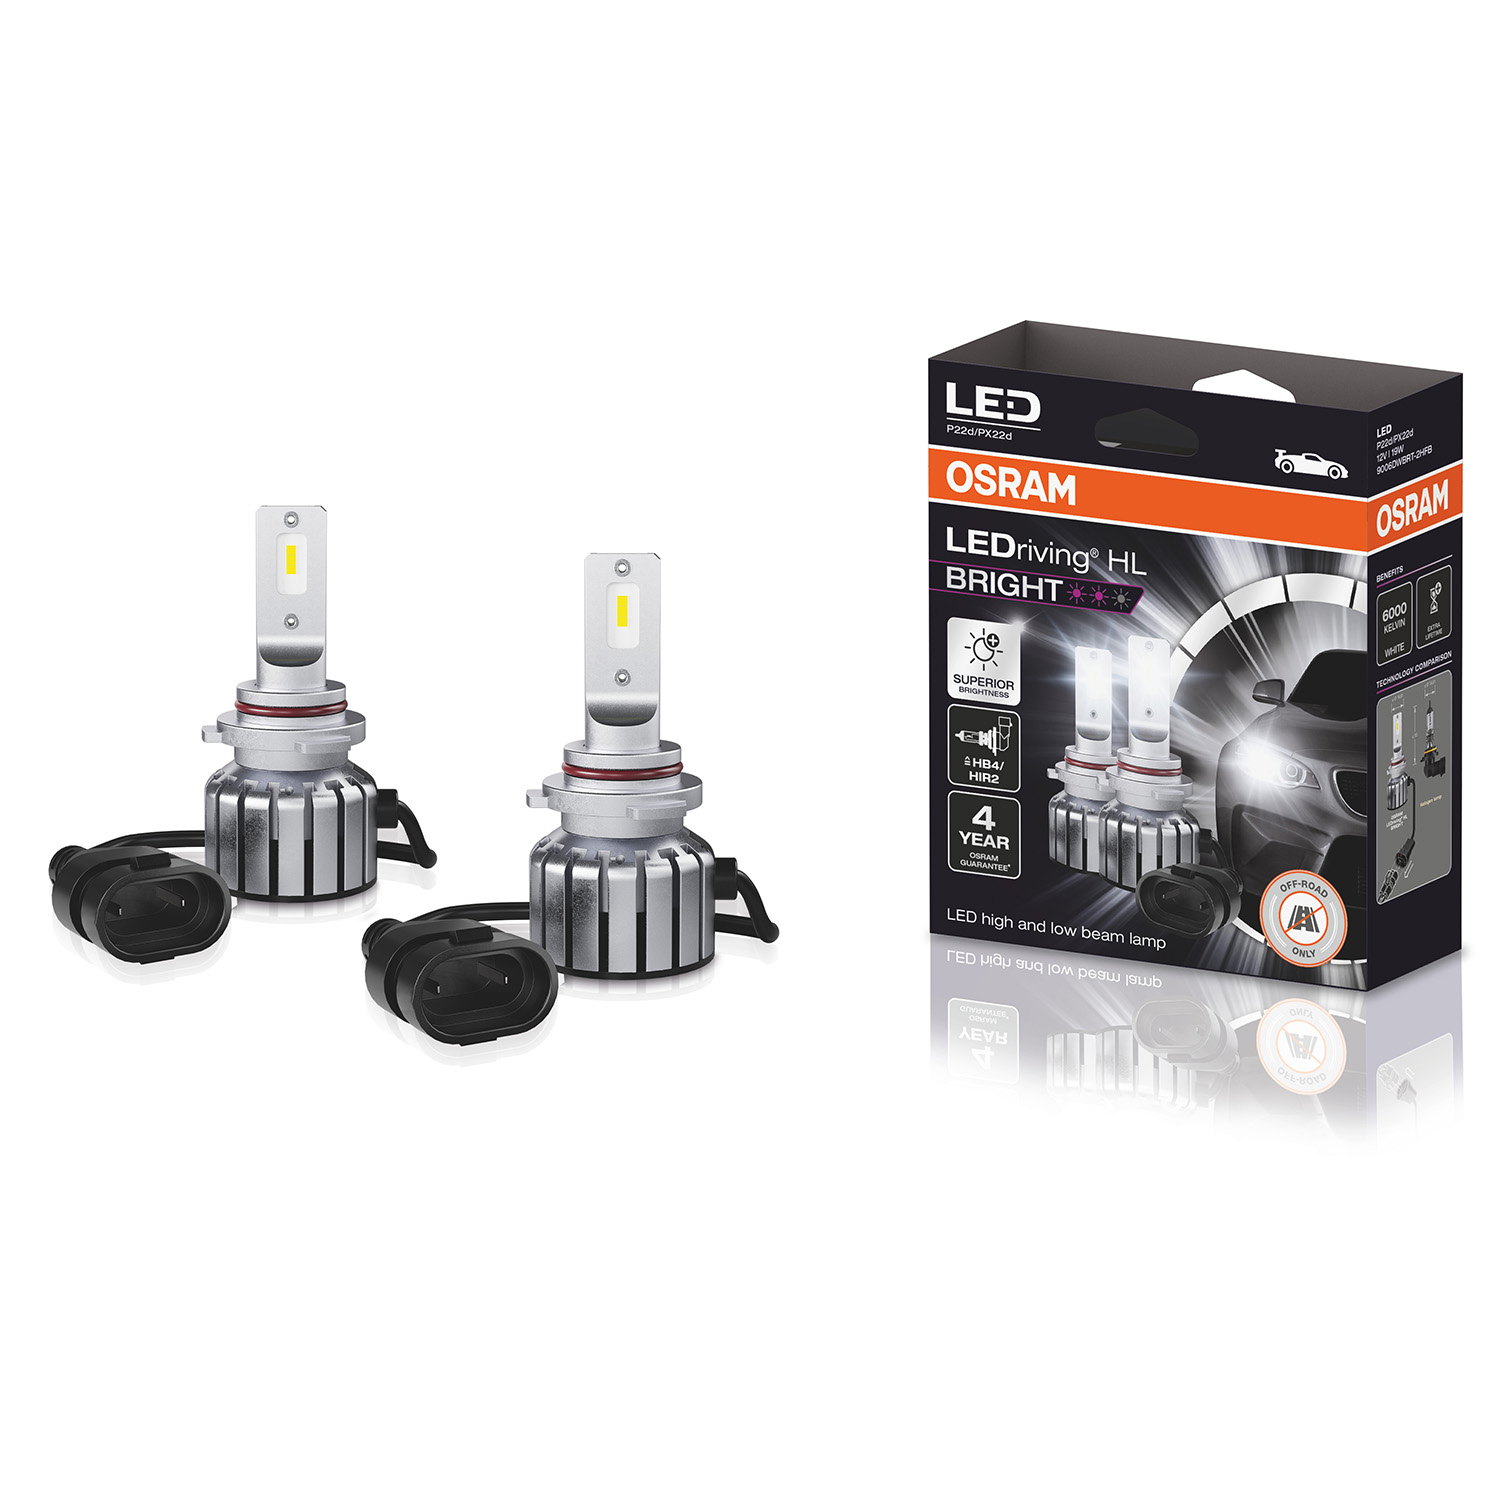 Osram LEDriving HL BRIGHT +300% 12V LED Headlights